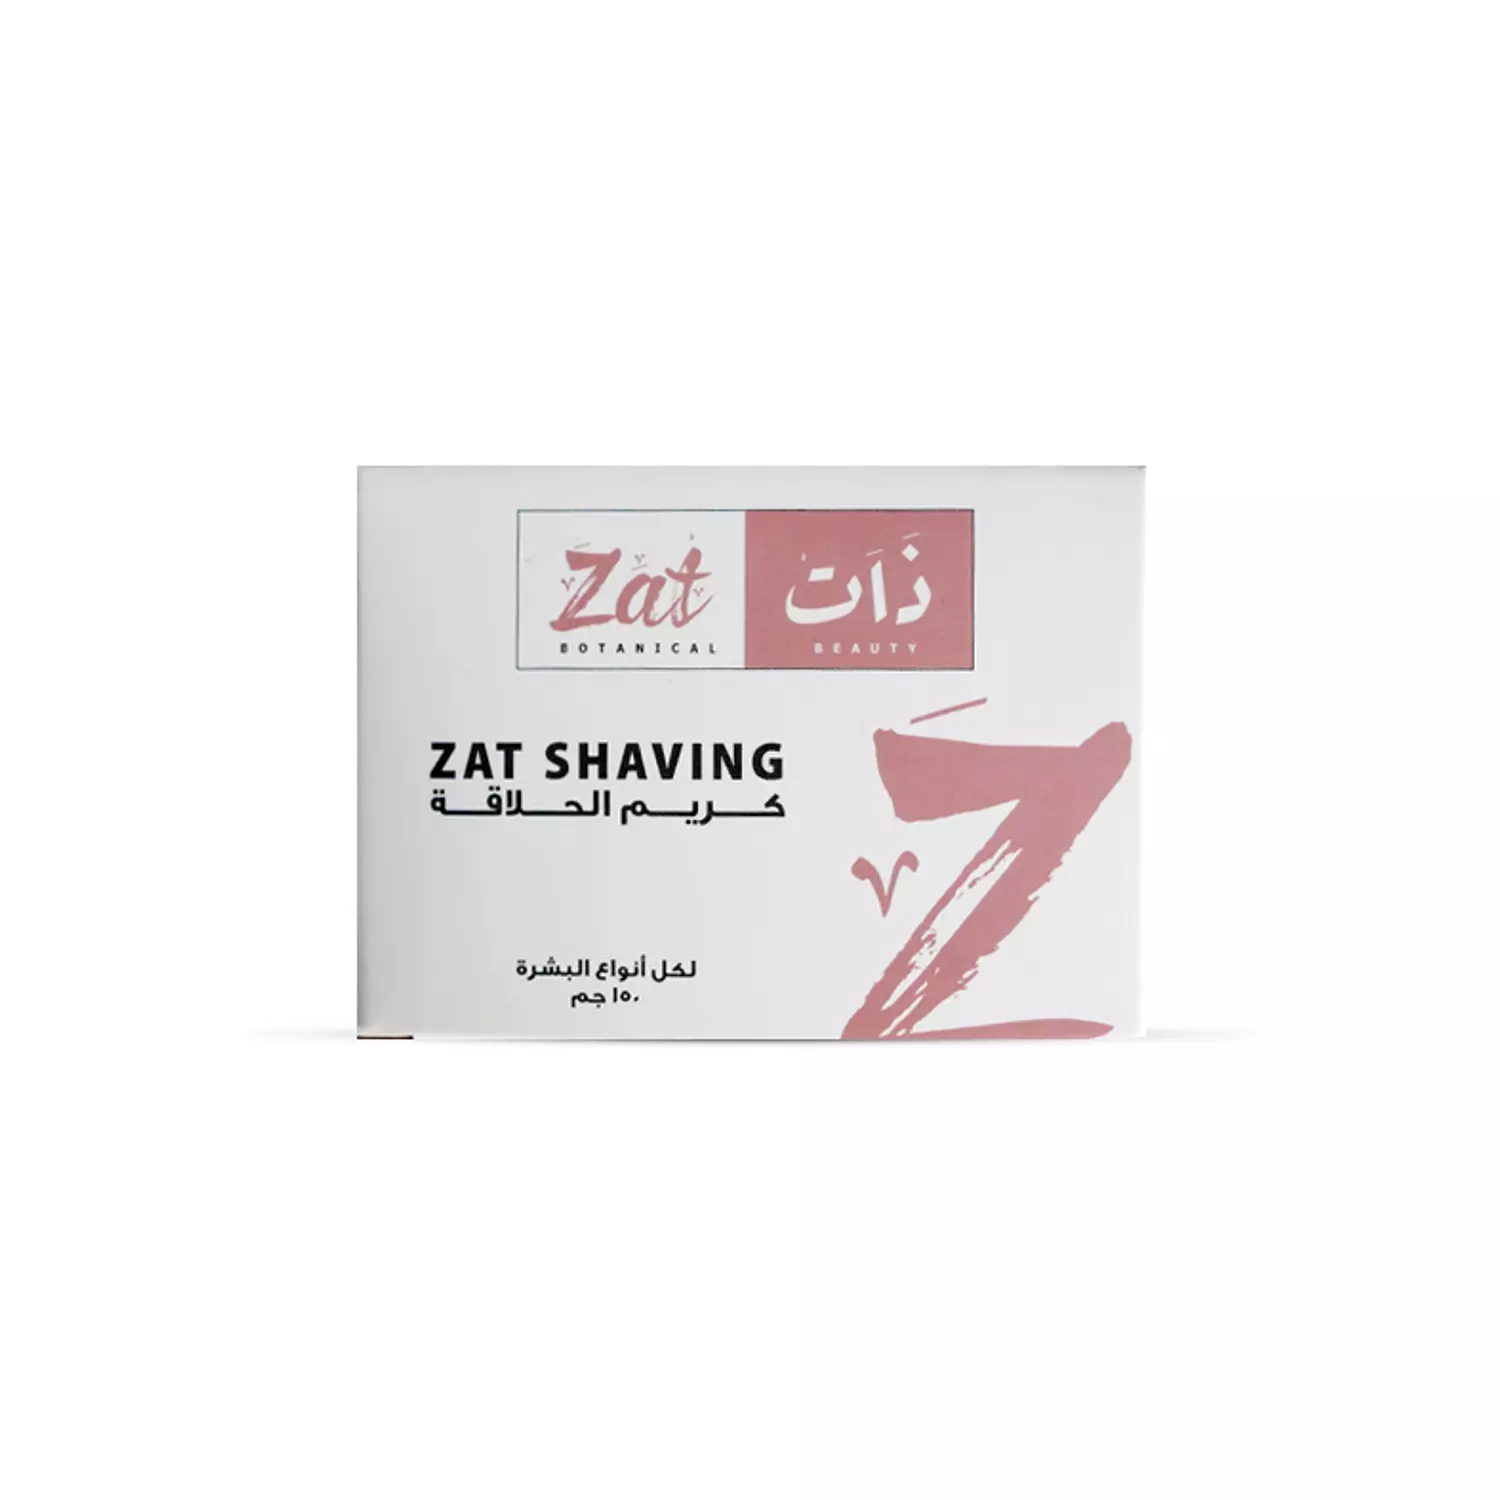 ZAT Shaving hover image